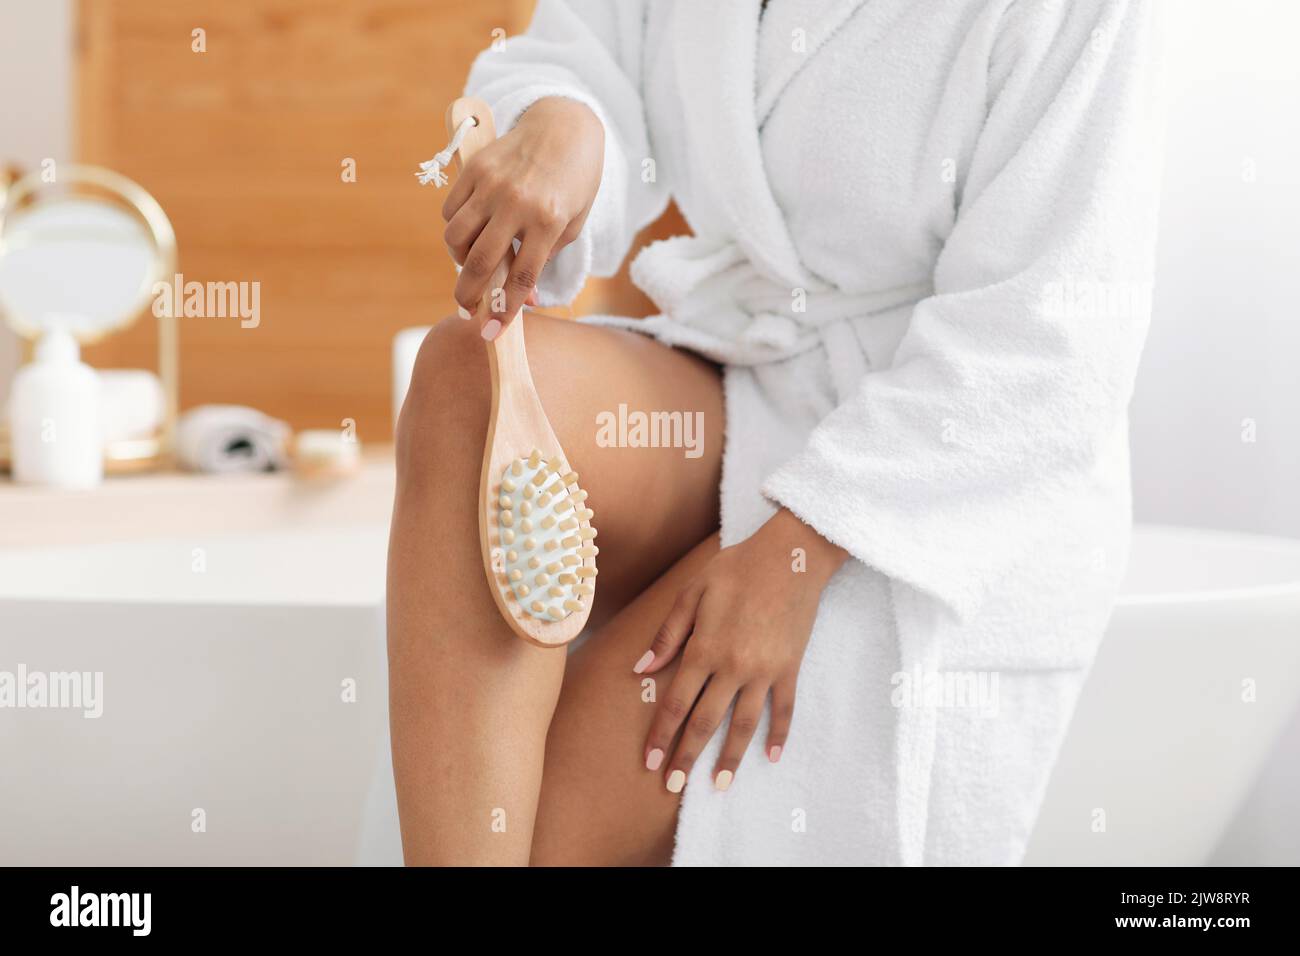 Femme massant les jambes à l'aide d'une brosse en bois dans la salle de bains, court Banque D'Images